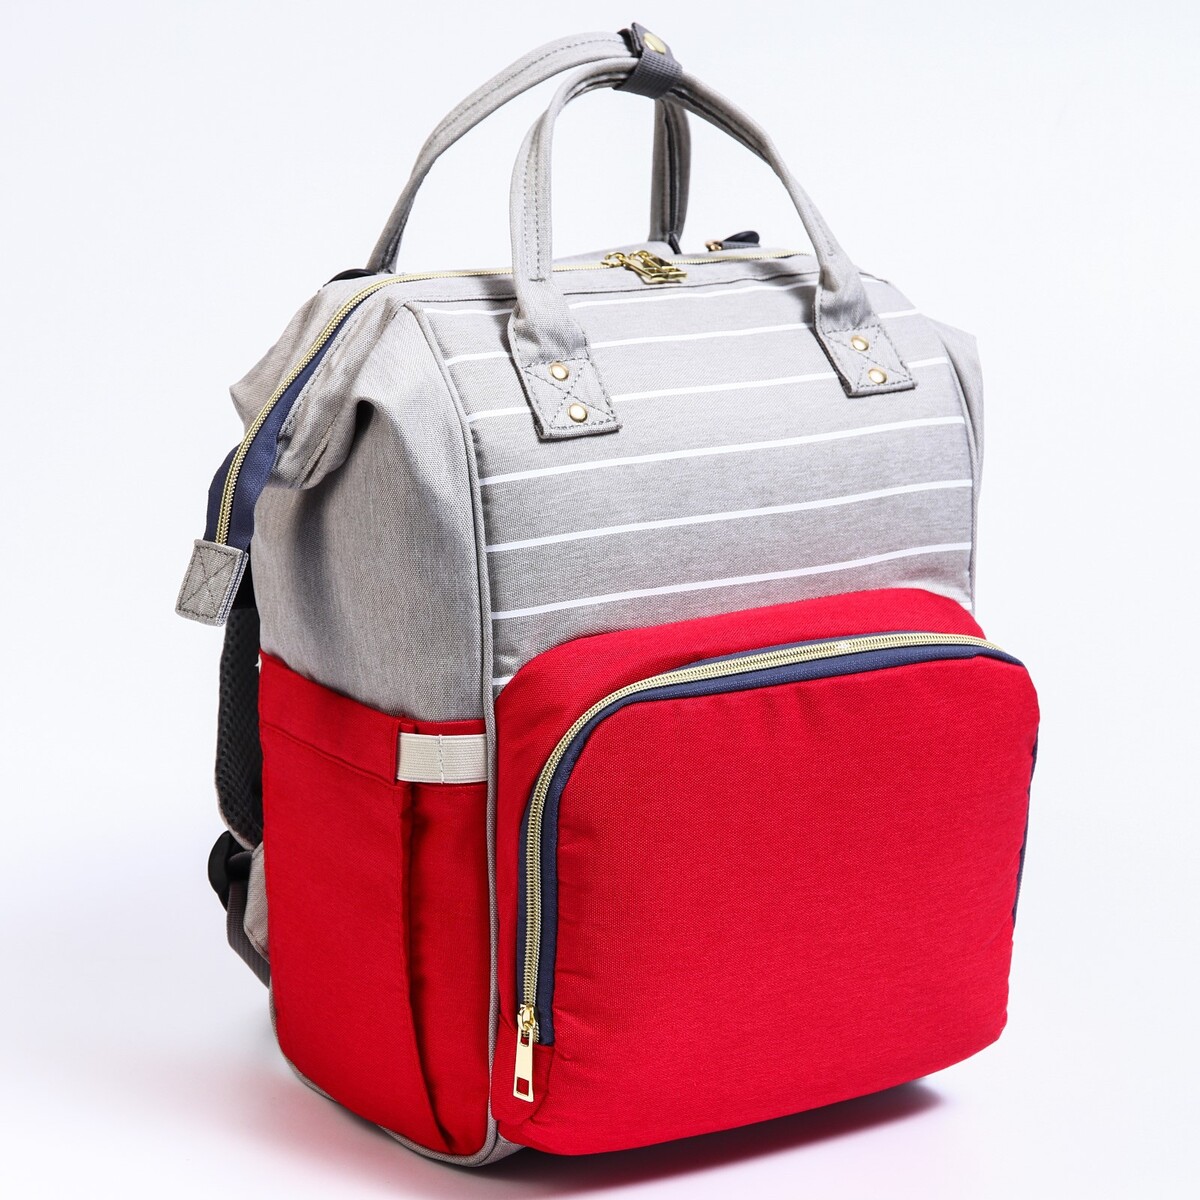 Рюкзак женский с термокарманом, термосумка - портфель, цвет серый/красный рюкзак kingkong i 30 wb 9064 черн средний фоторюкзак